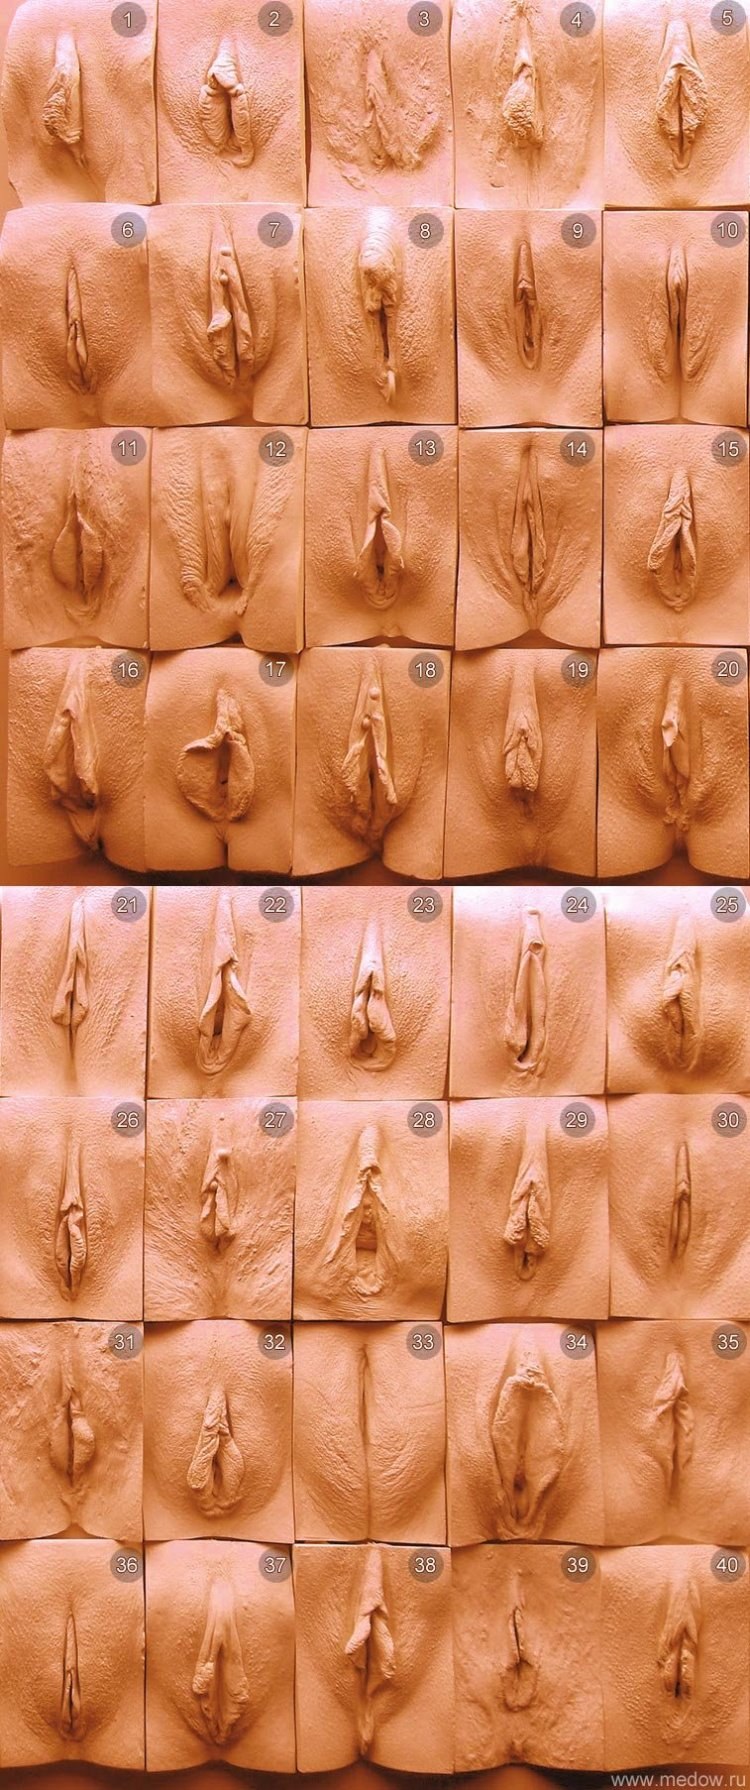 Красивые женские гениталии (58 фото) - секс фото